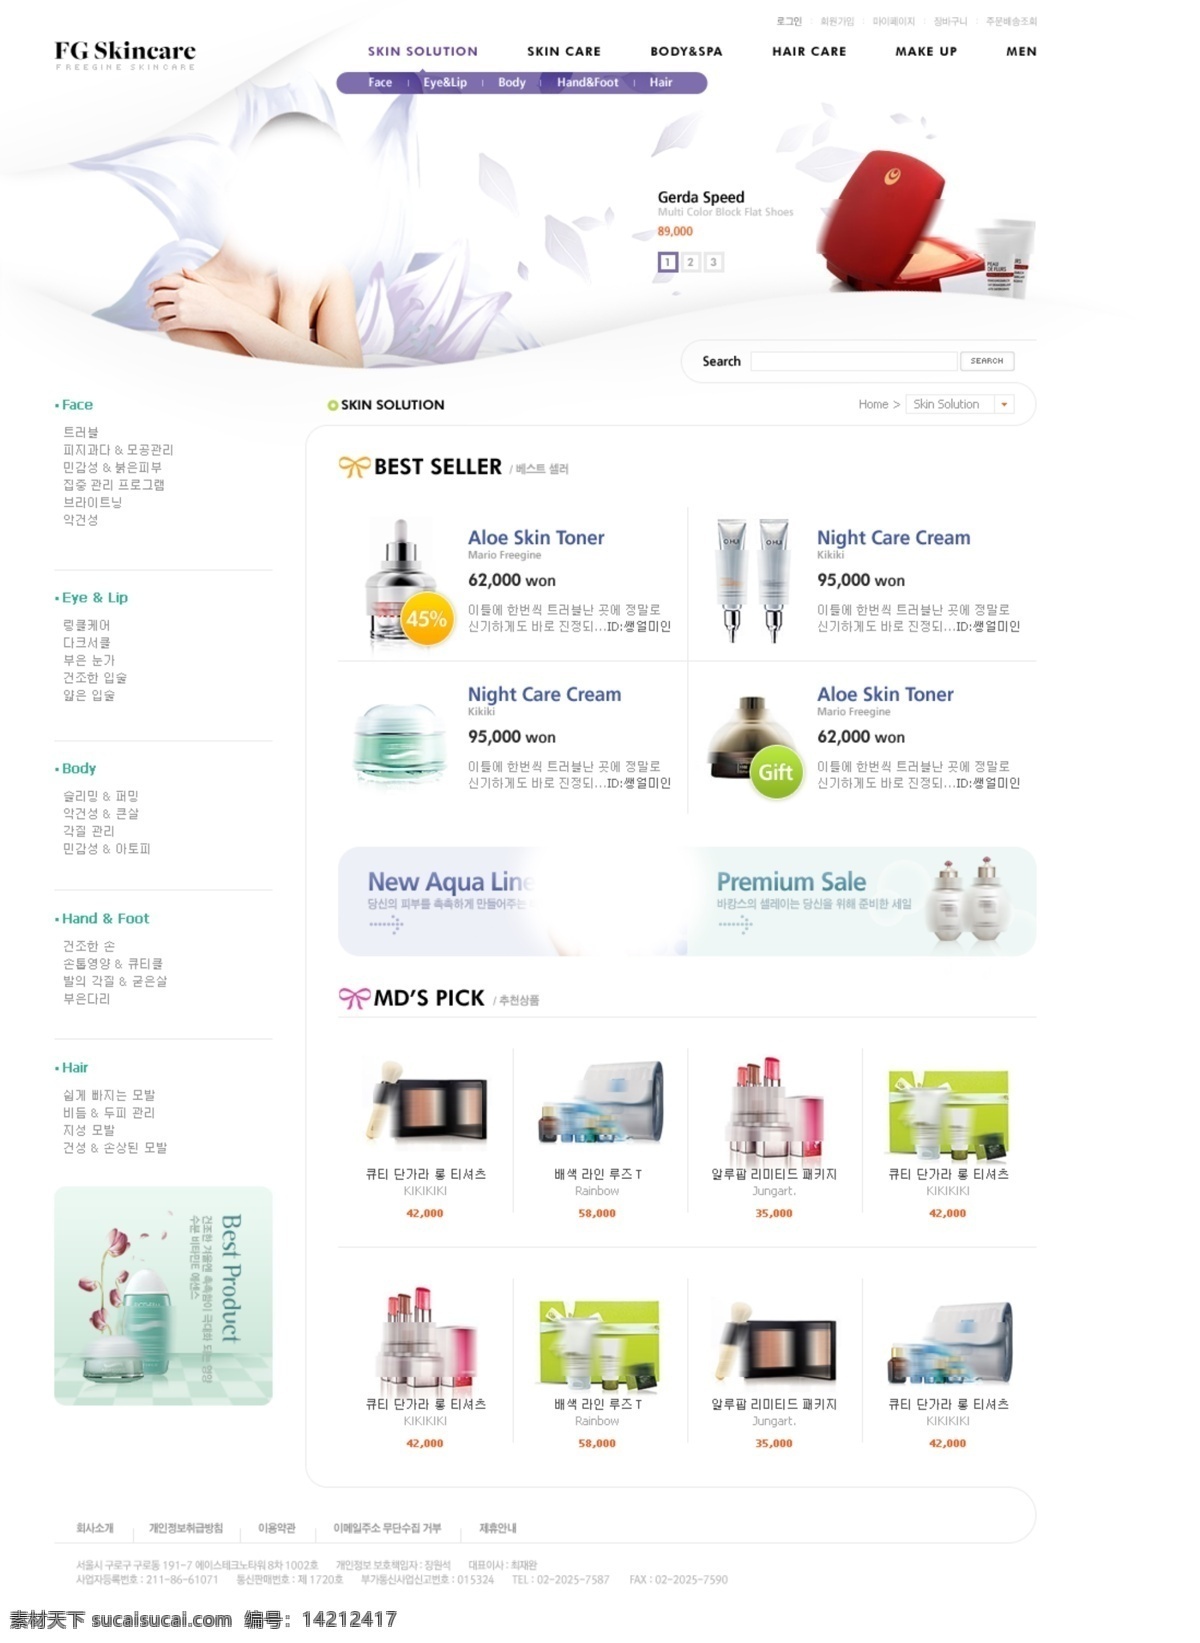 韩 版 化妆品 网站 网页素材 韩版网页 企业网页 校园网 分层网页素材 韩国时尚网页 web 界面设计 韩文模板 白色